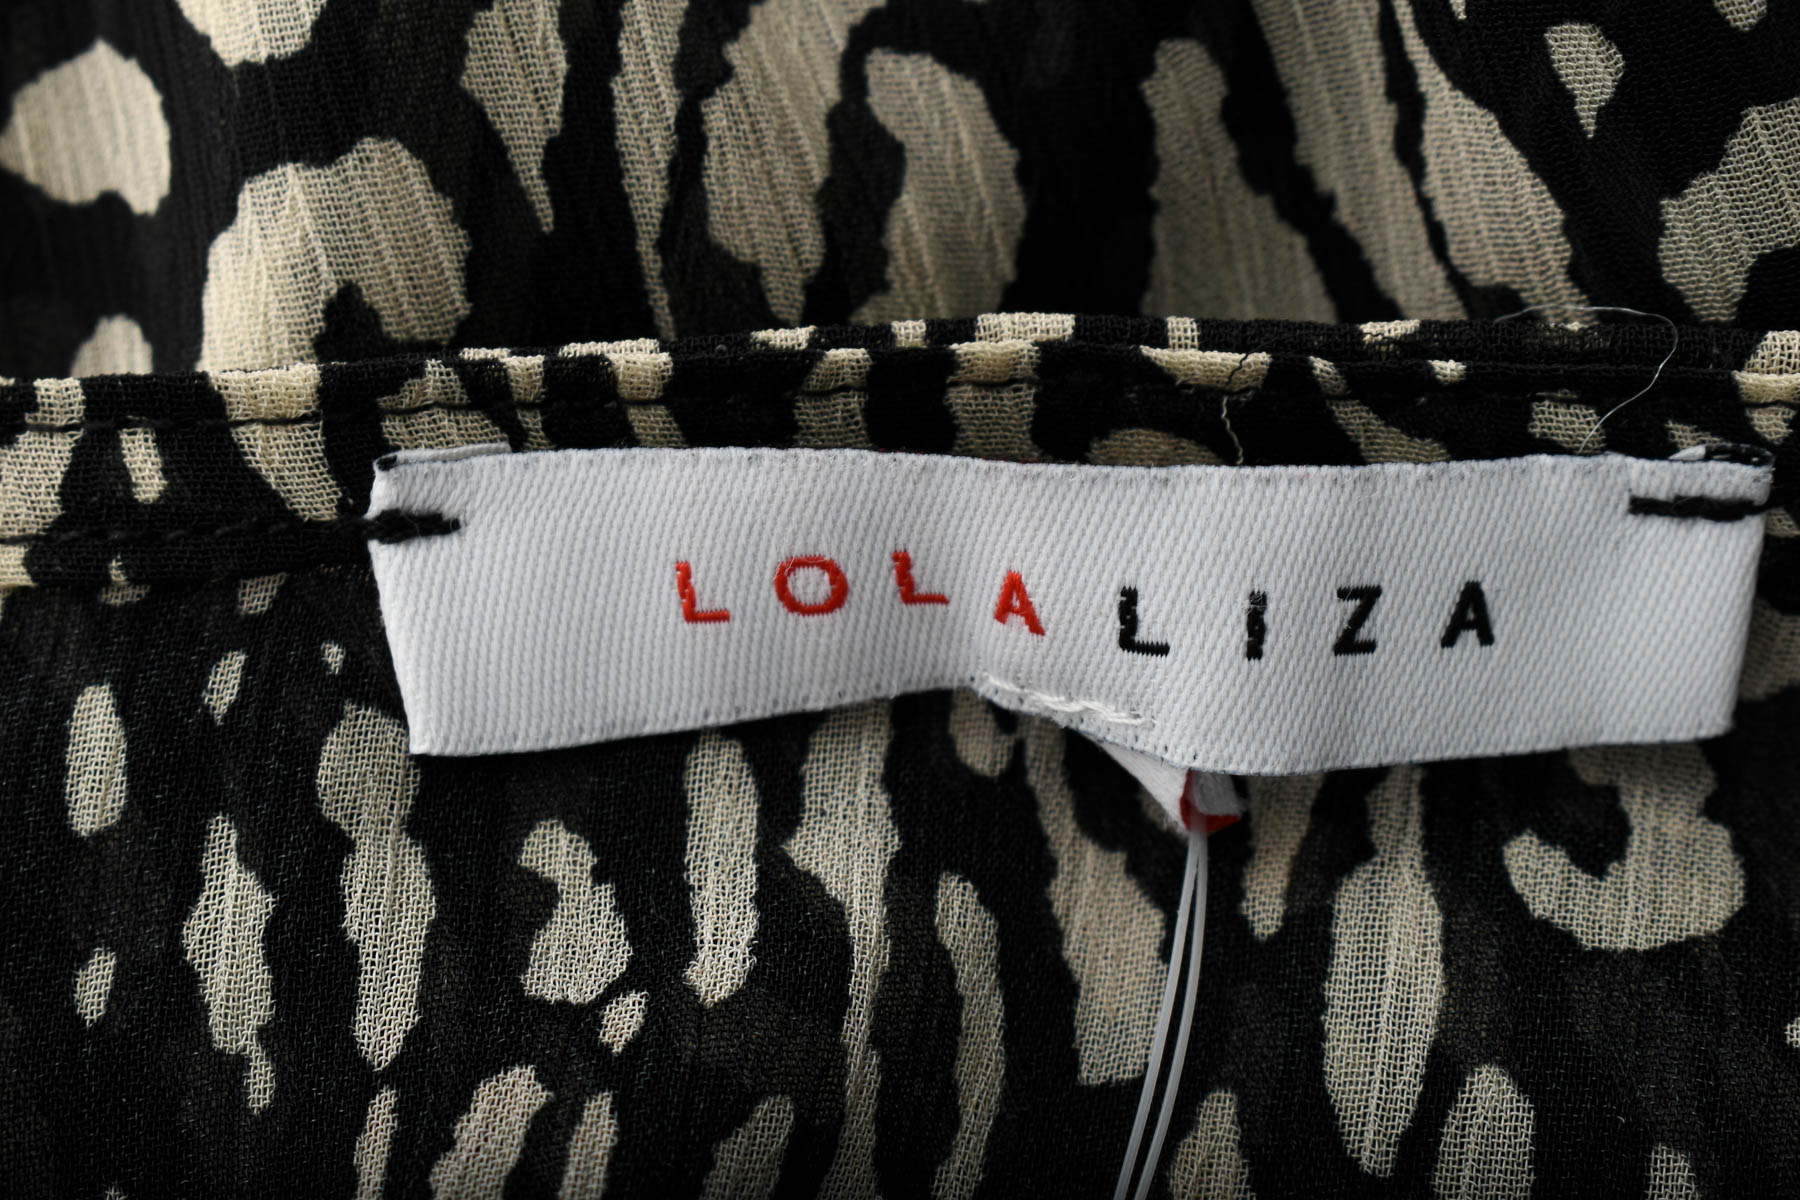 Women's shirt - LOLA LIZA - 2